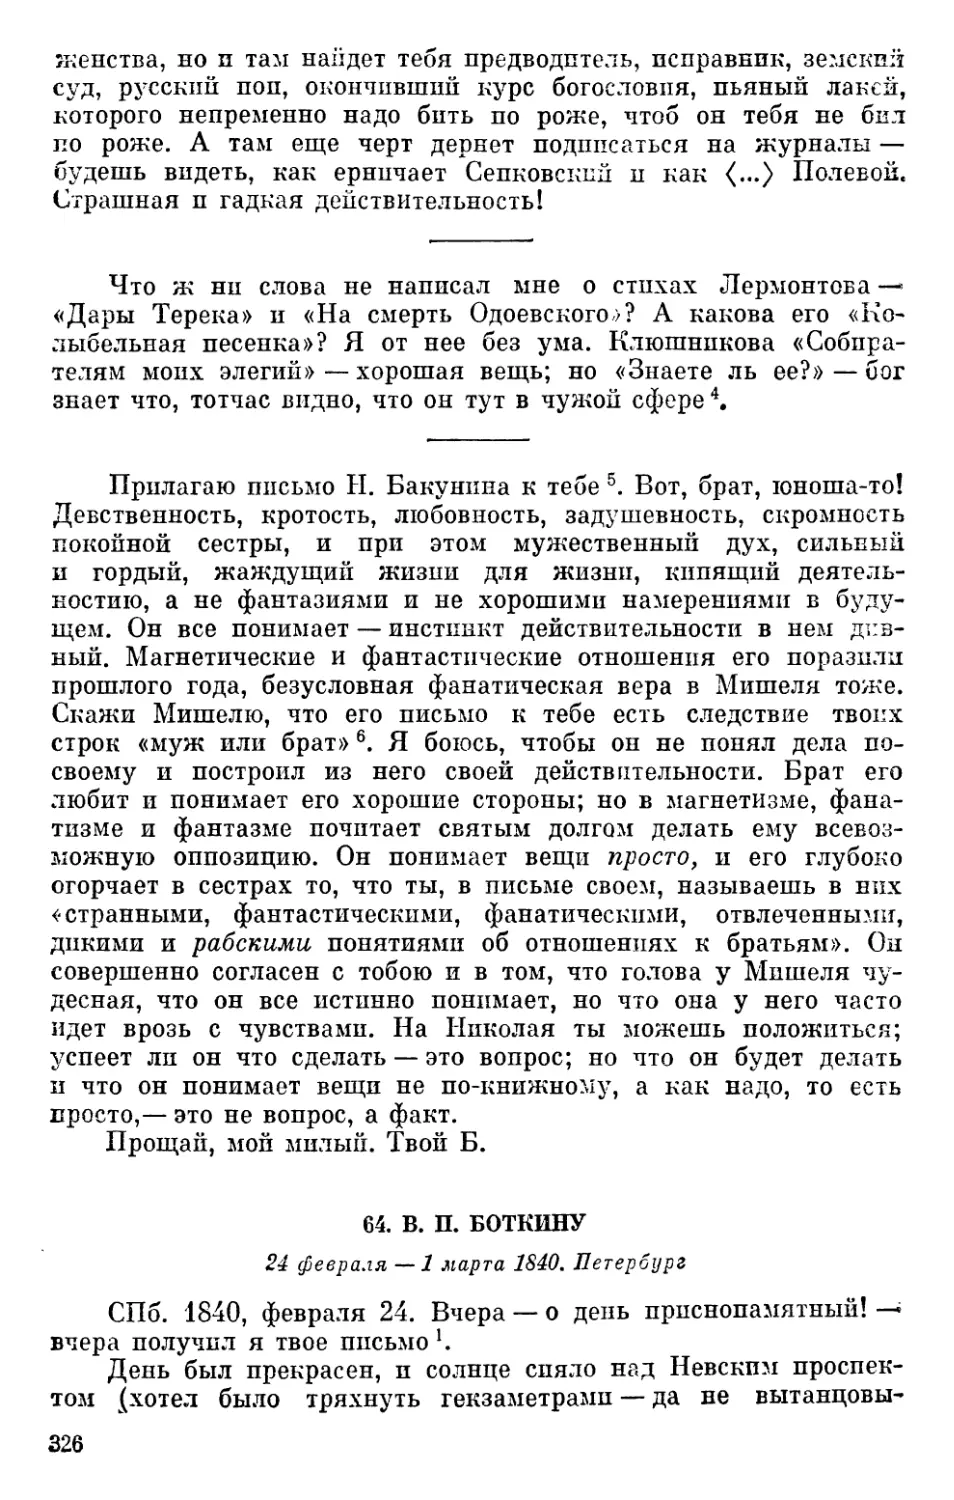 64. В. П. Боткину. 24 февраля — 1 марта1840